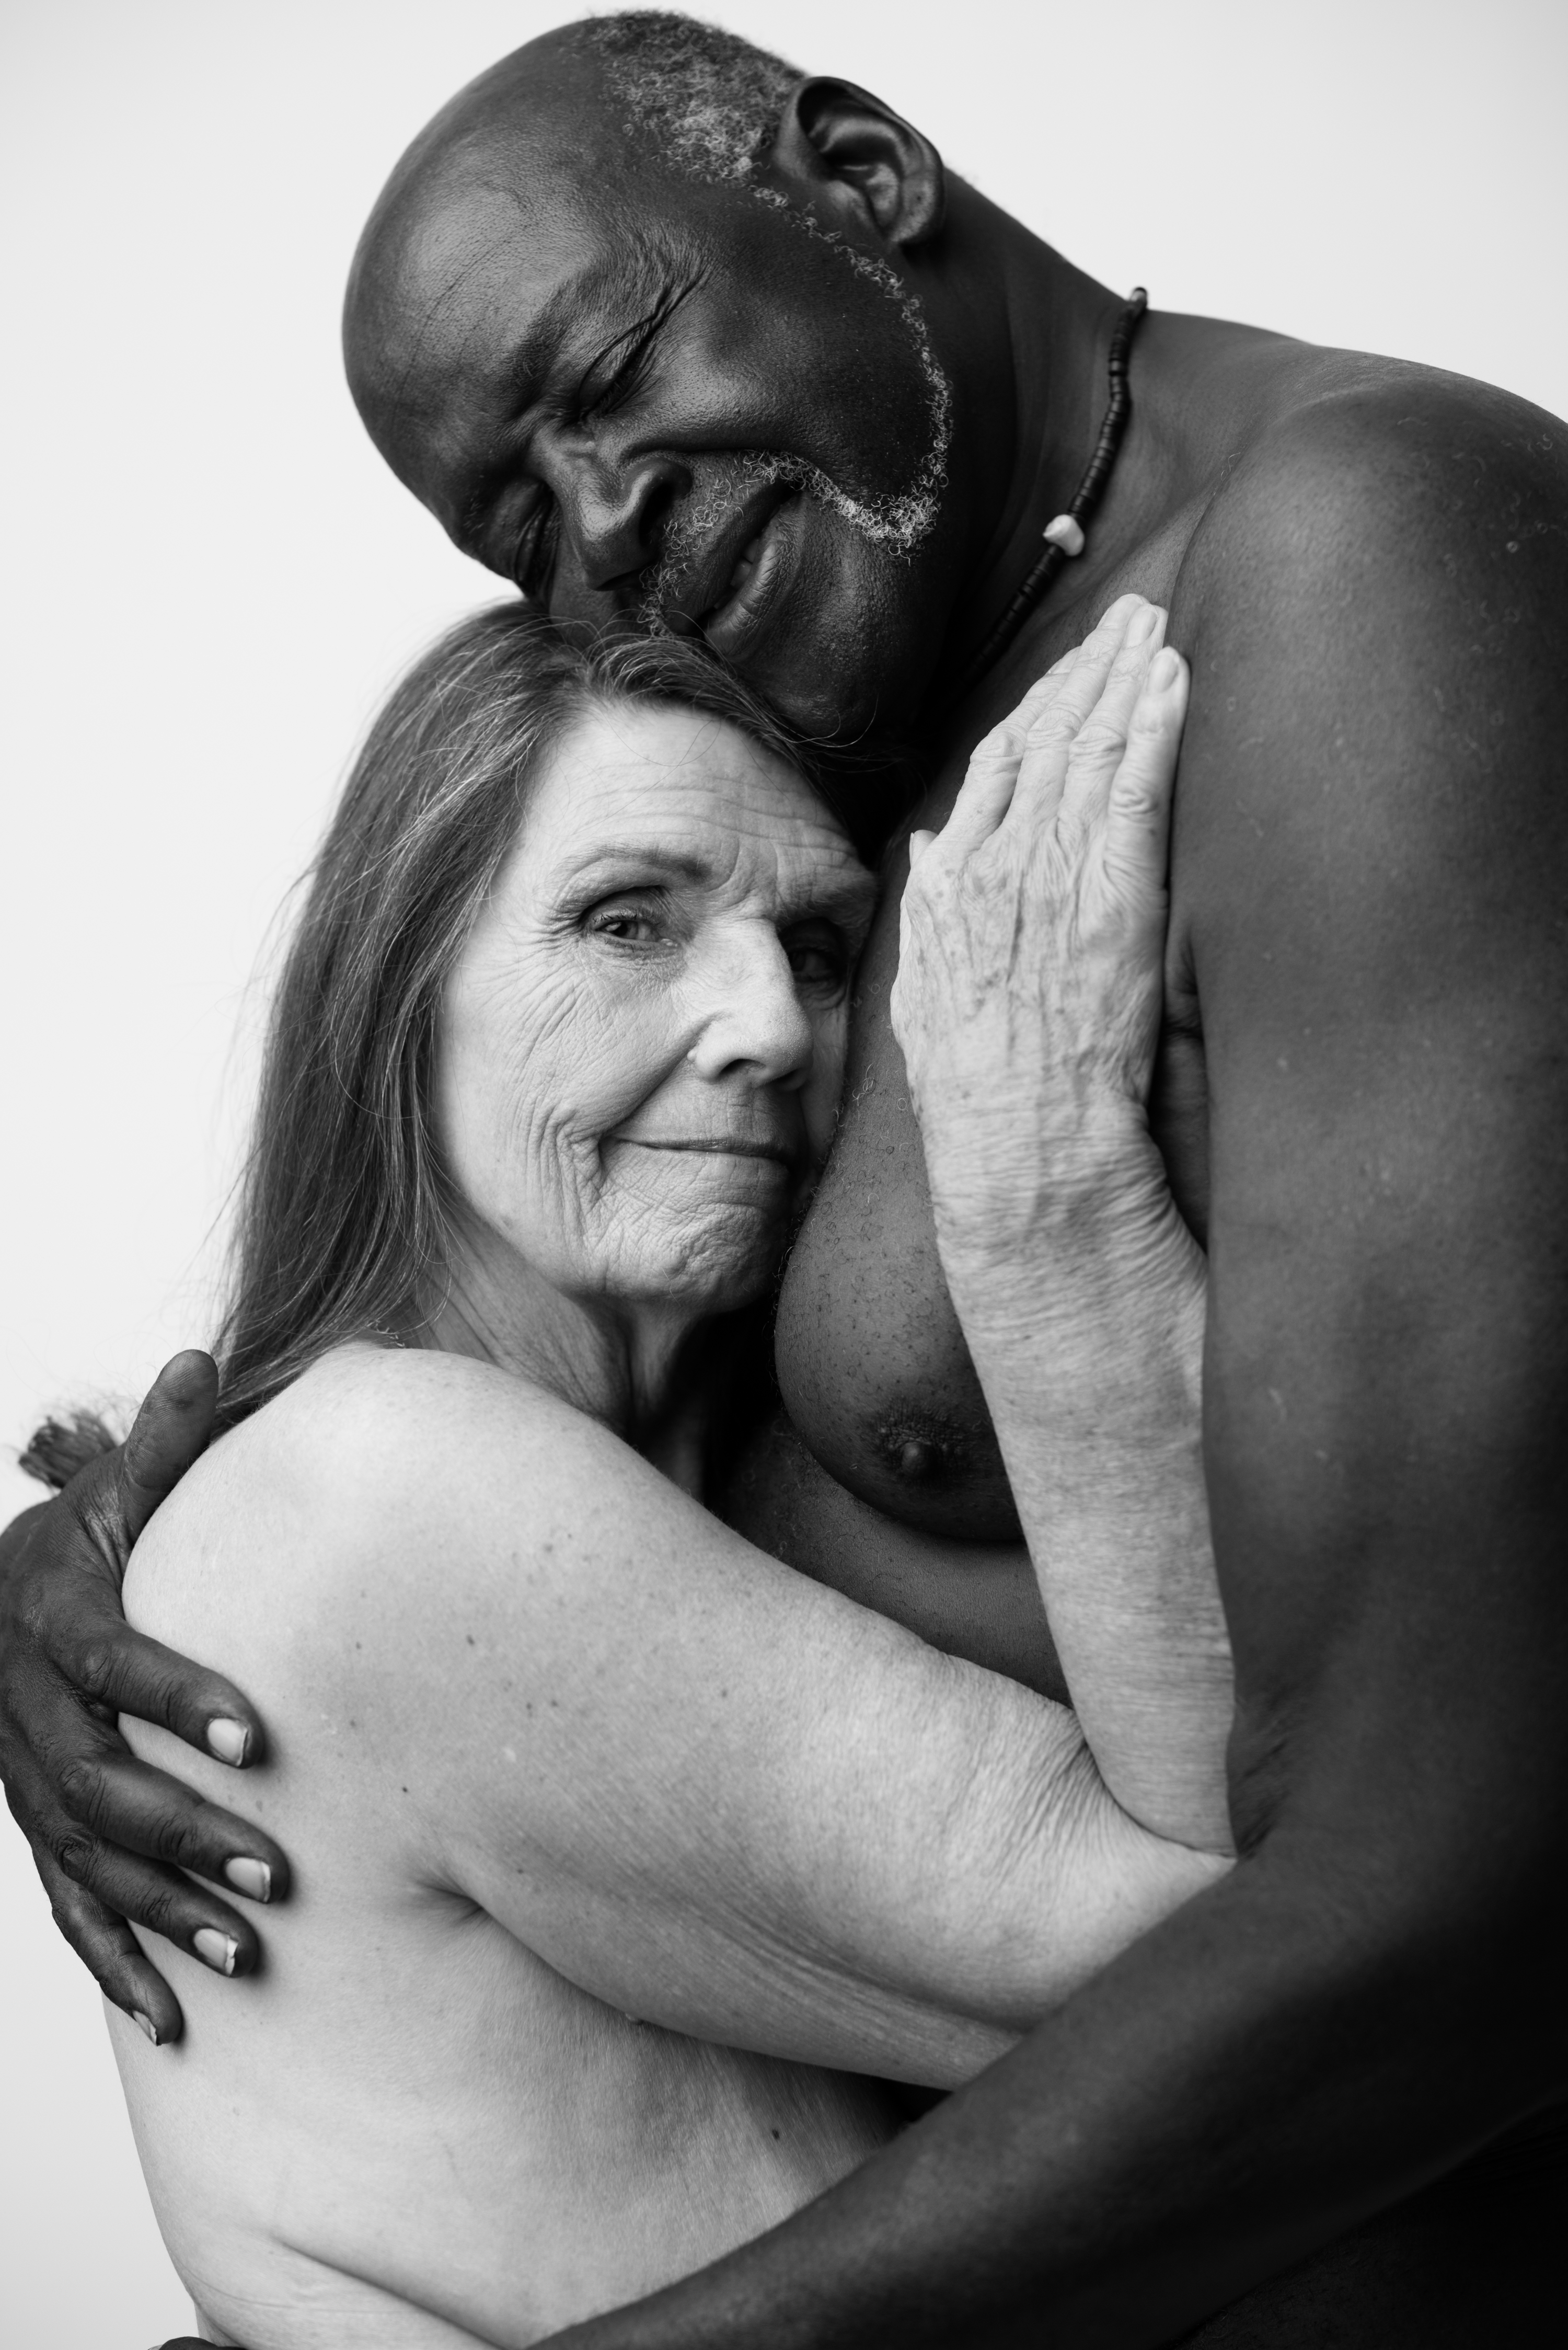 3000px x 4495px - Nude Photos of Elderly, Interracial Couple Go Viral - ATTN: